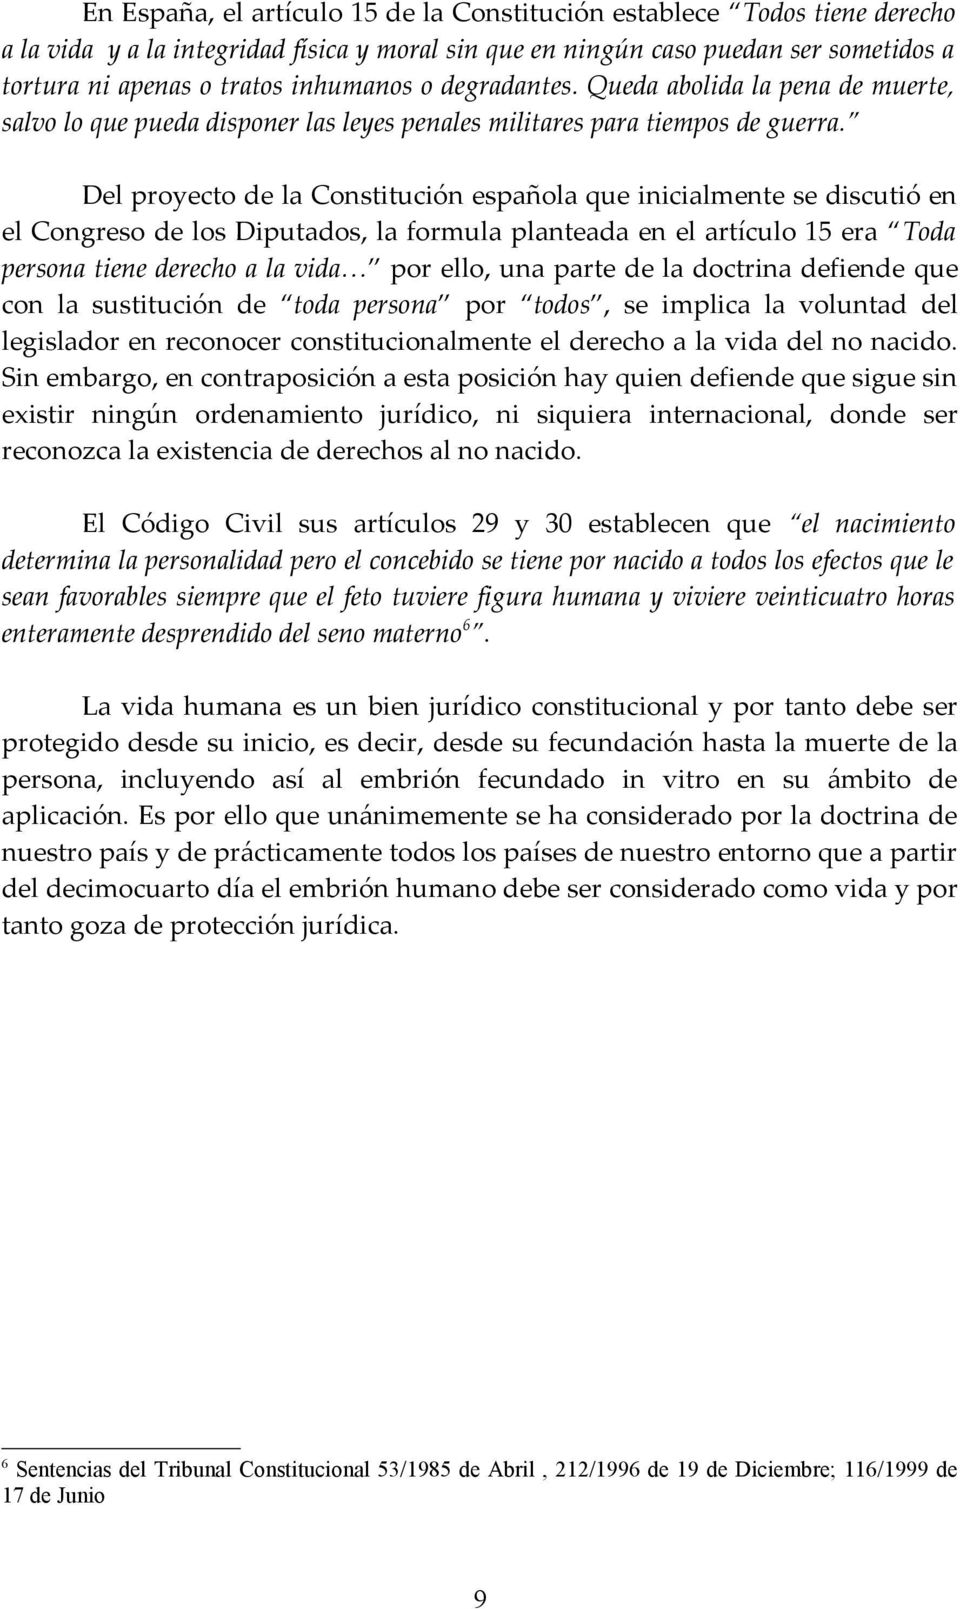 Del proyecto de la Constitución española que inicialmente se discutió en el Congreso de los Diputados, la formula planteada en el artículo 15 era Toda persona tiene derecho a la vida por ello, una